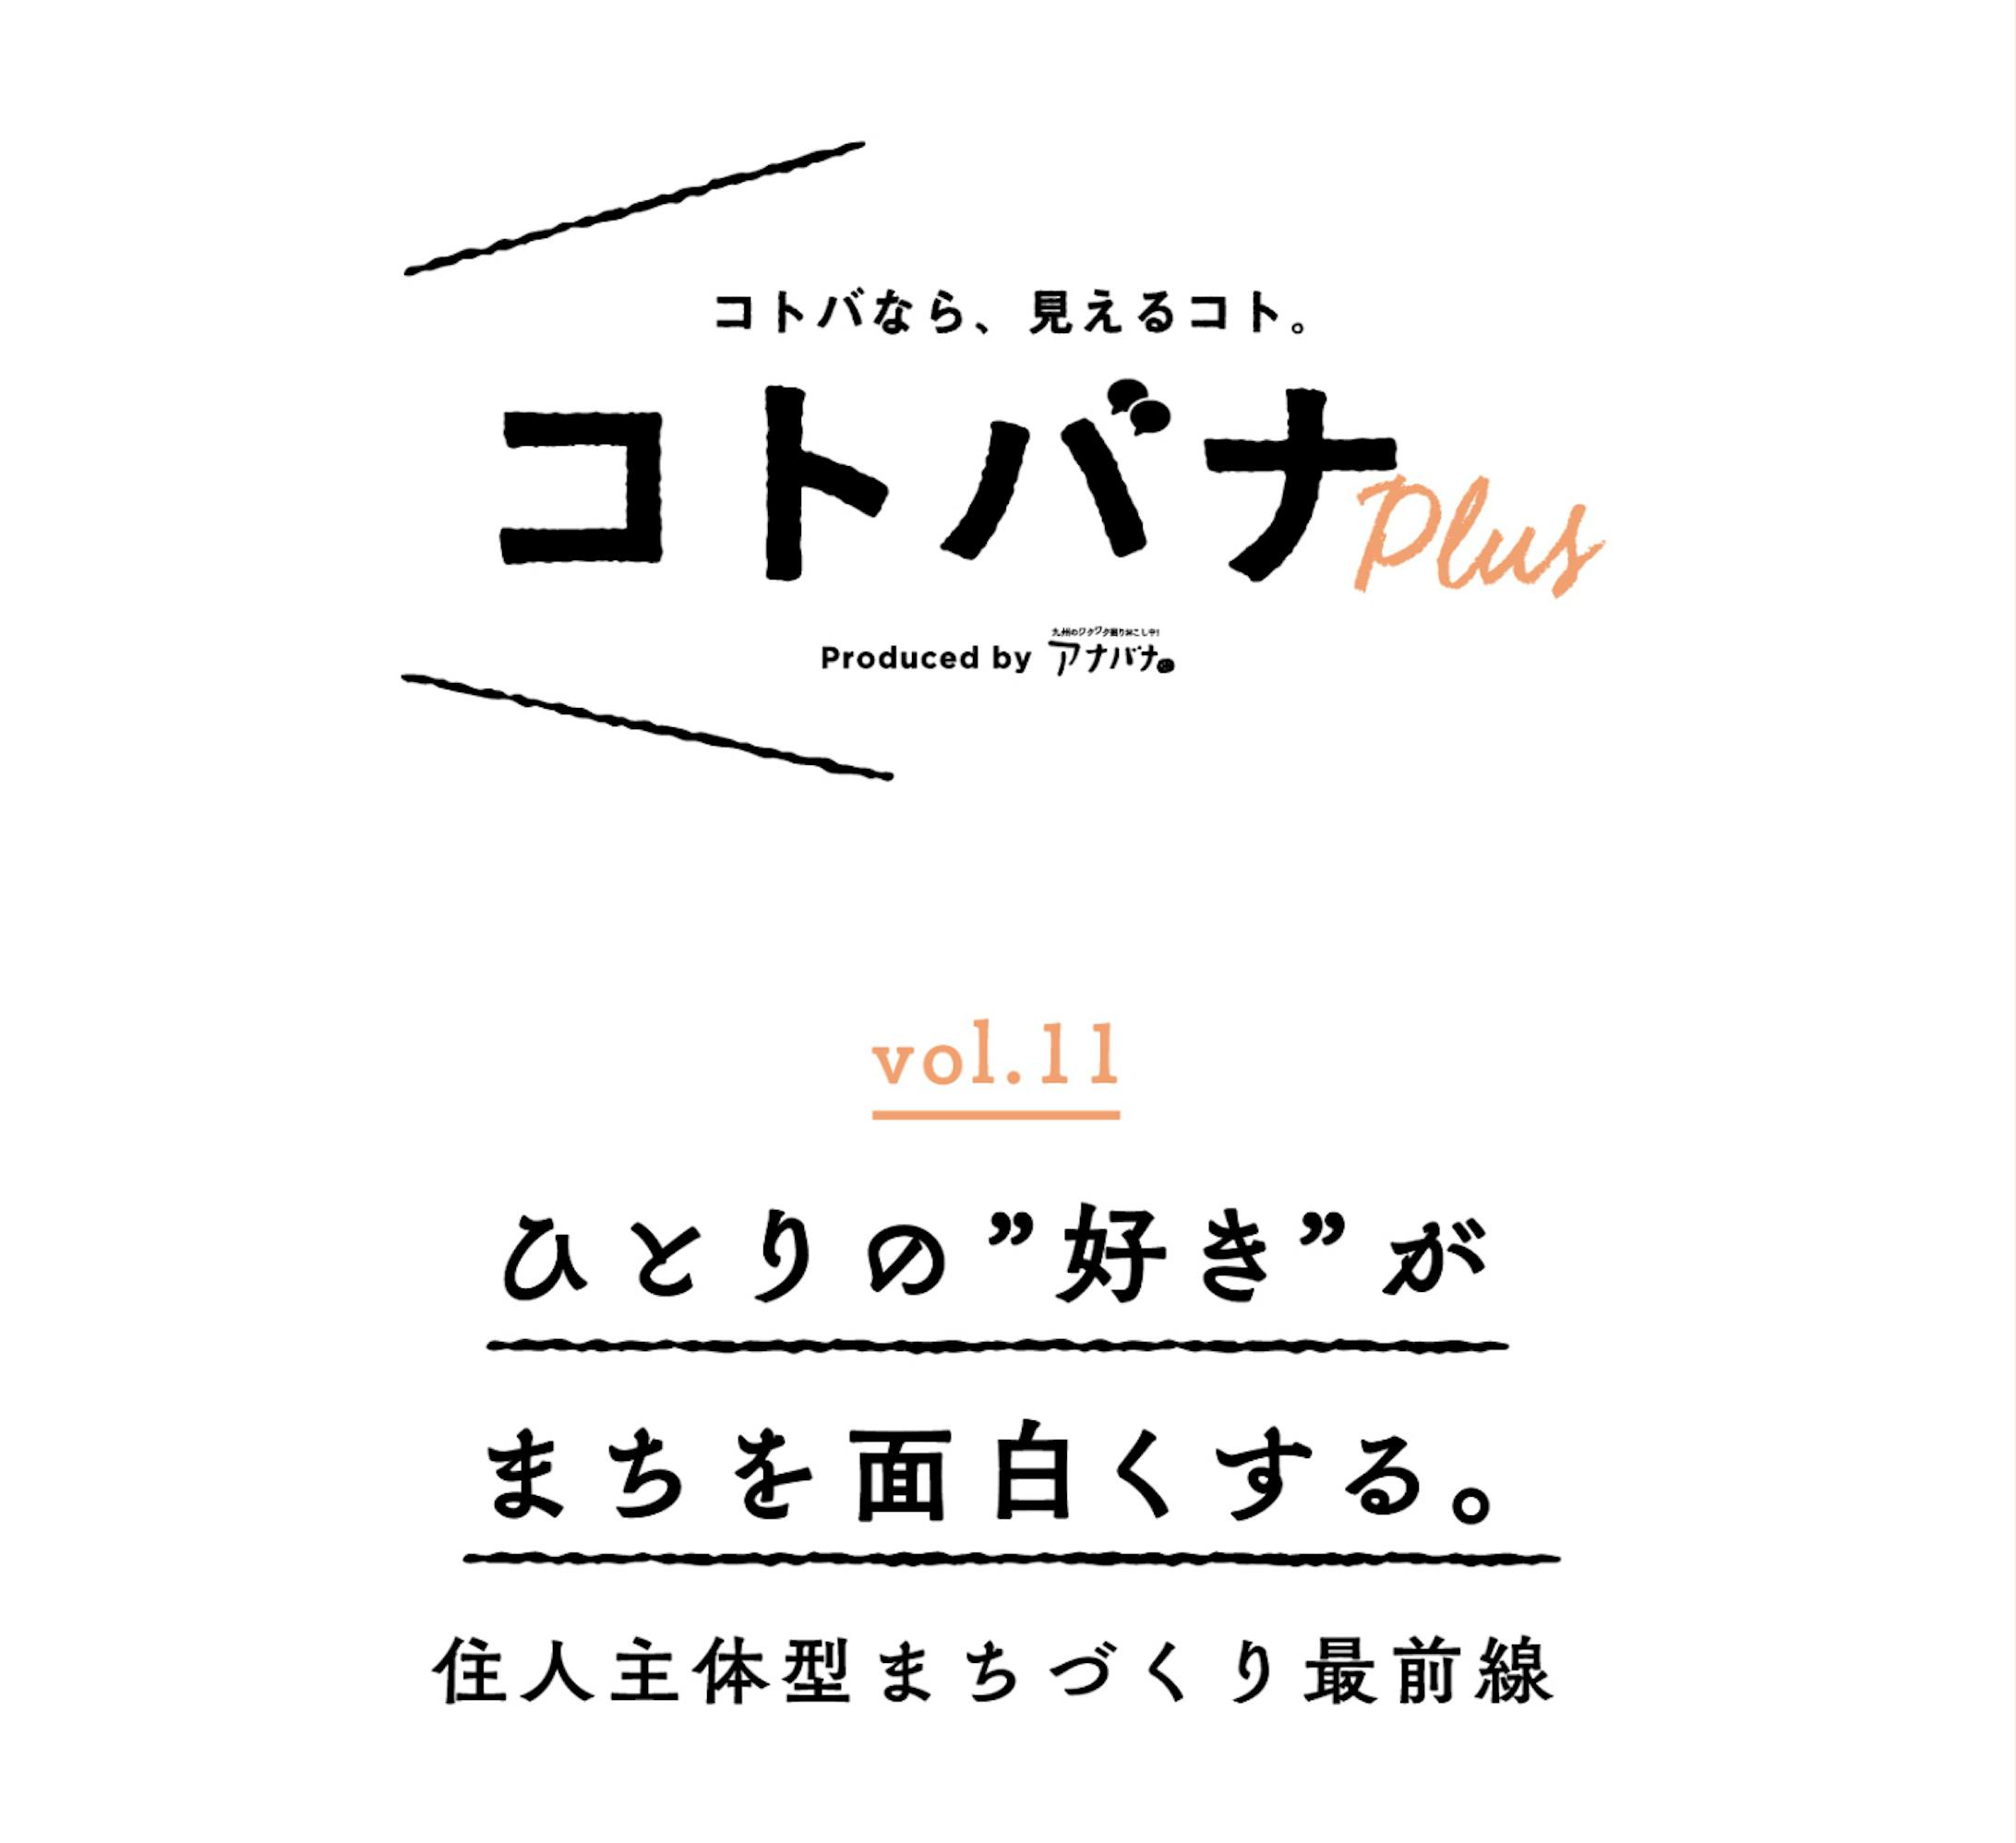 【コトバナplus vol.11】ひとりの”好き”がまちを面白くする。 住人主体型まちづくり最前線   アナバナ九州のワクワクを掘りおこす    anaba na.com-1